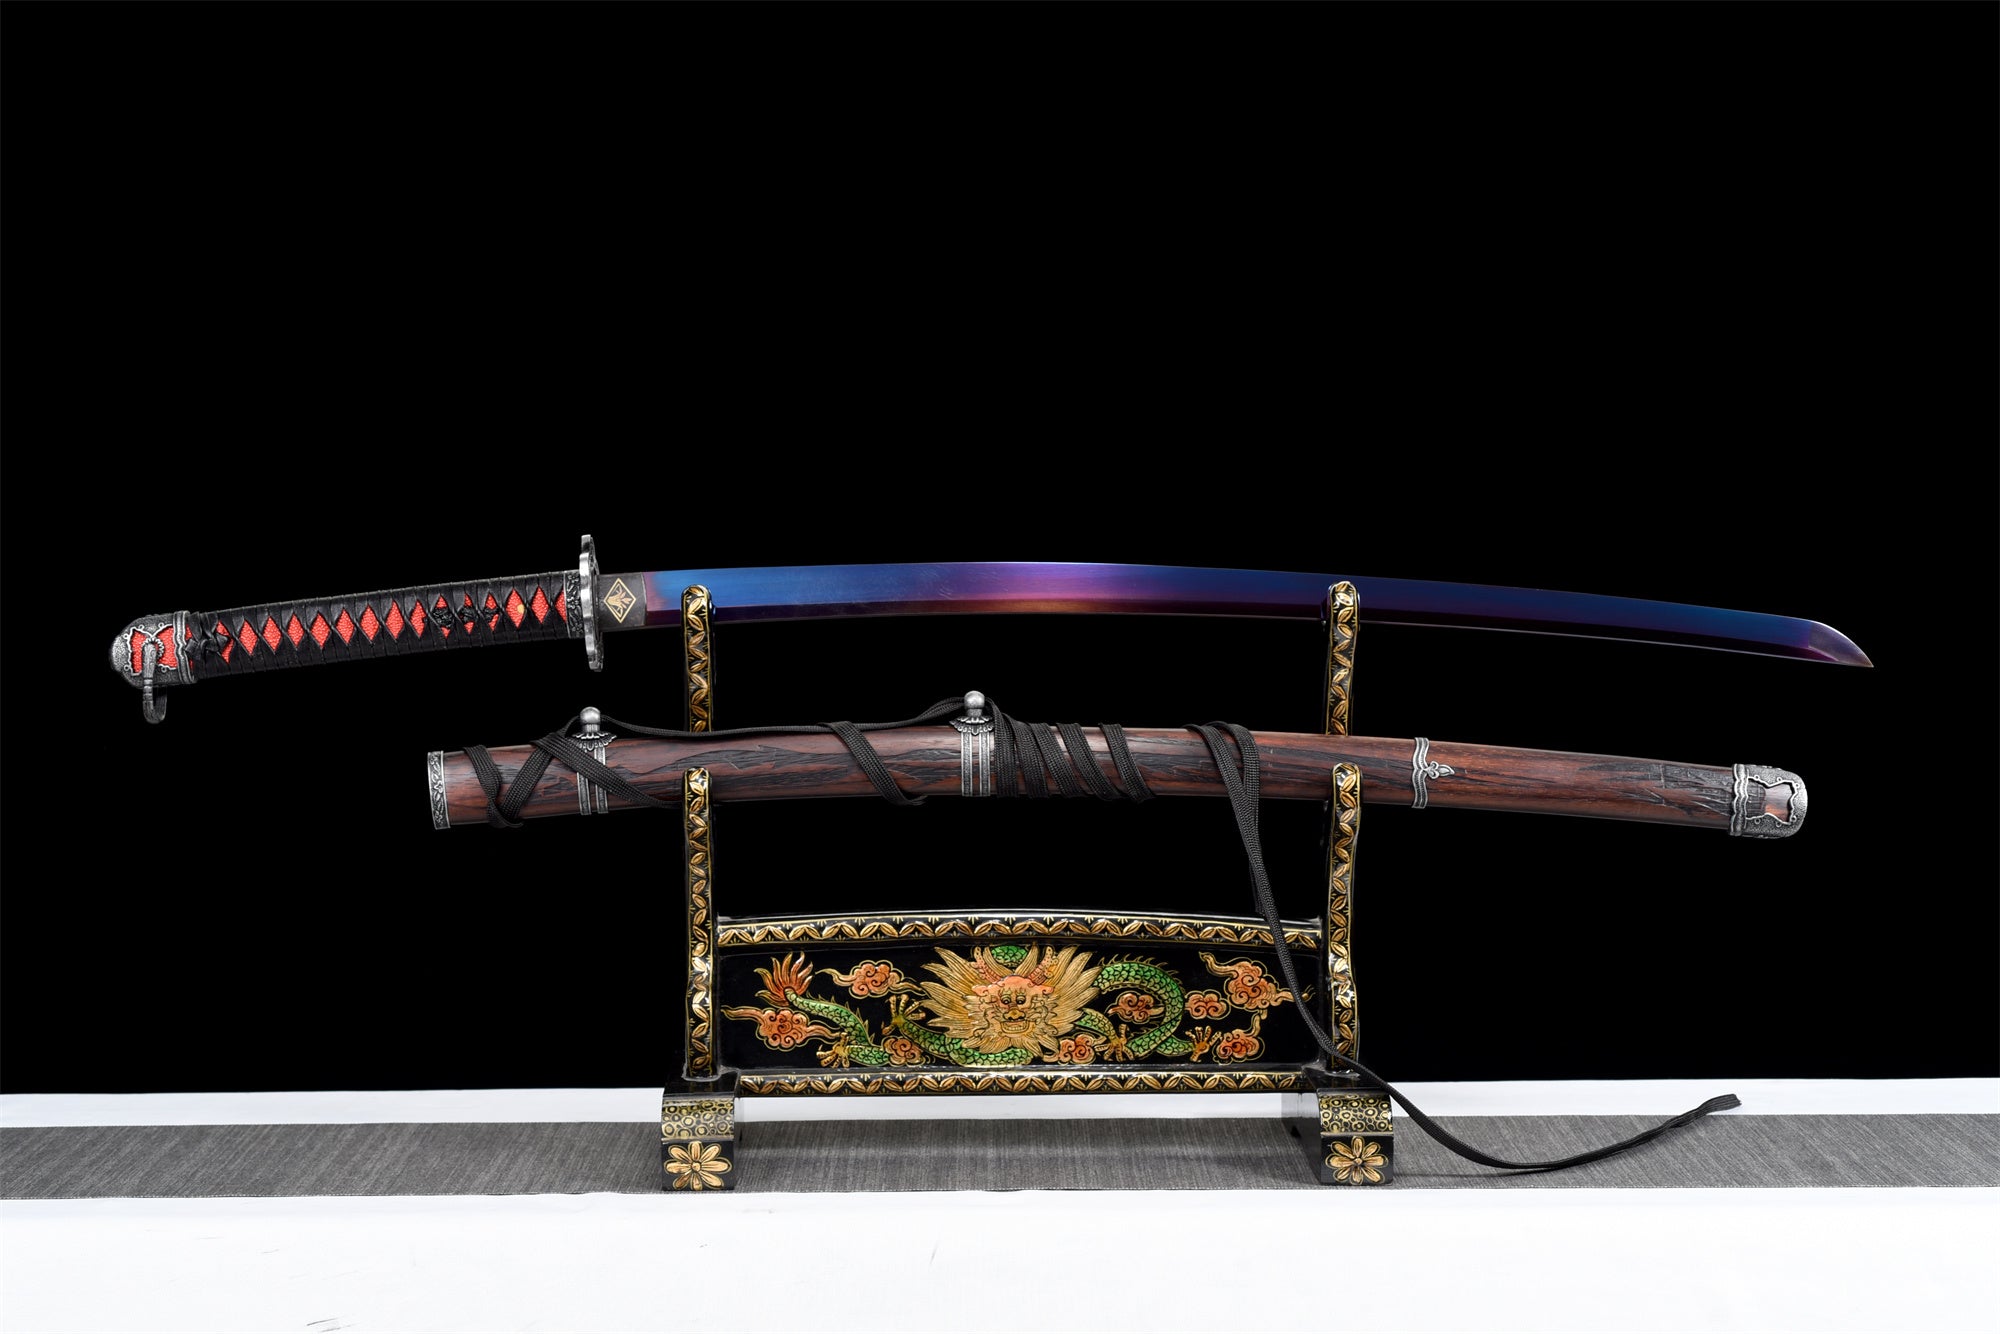 Red Undead Cut Katana, Sekiro: Shadows Die Twice, japanisches Samurai-Schwert, echtes Katana, handgefertigtes Schwert, Hochmanganstahl